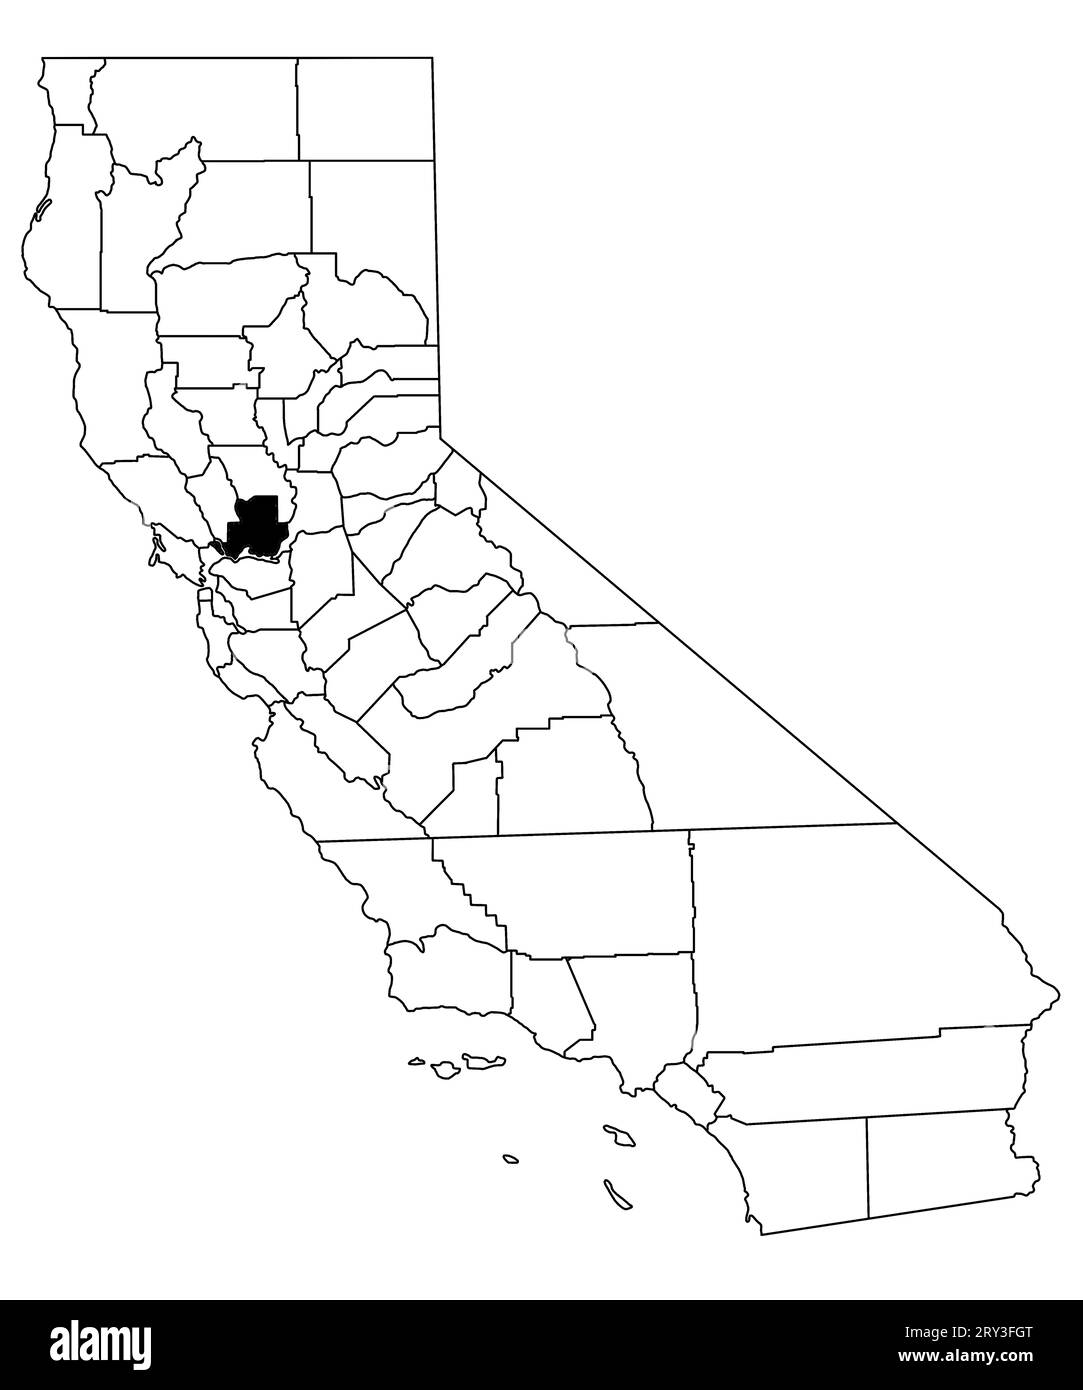 Mappa della contea di solano nello stato della California su sfondo bianco. Mappa singola della contea evidenziata in nero sulla mappa della California. STATI UNITI, STATI UNITI Foto Stock